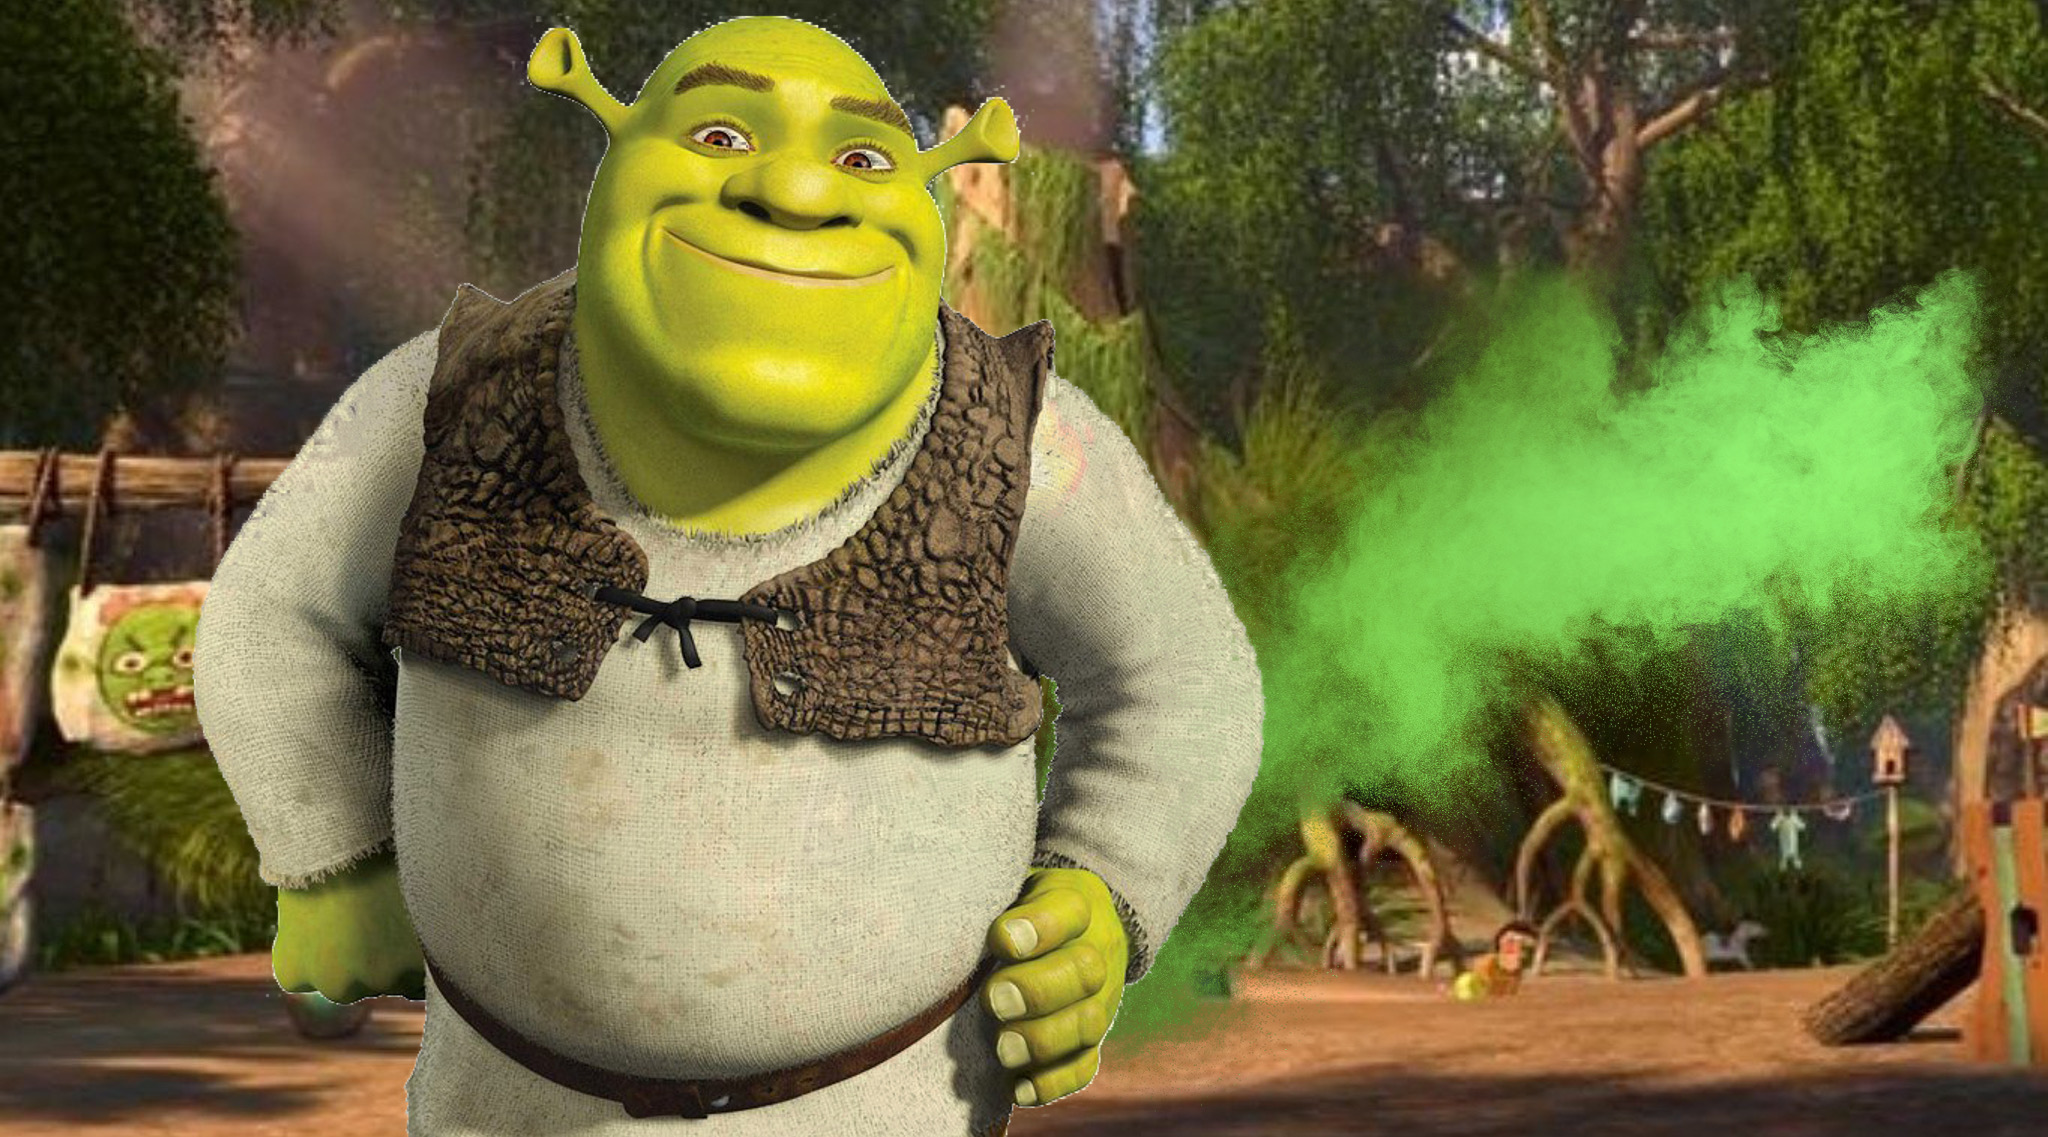 Shrek's Favourite Wether Is The Wind by DarkMoonAnimation on DeviantArt